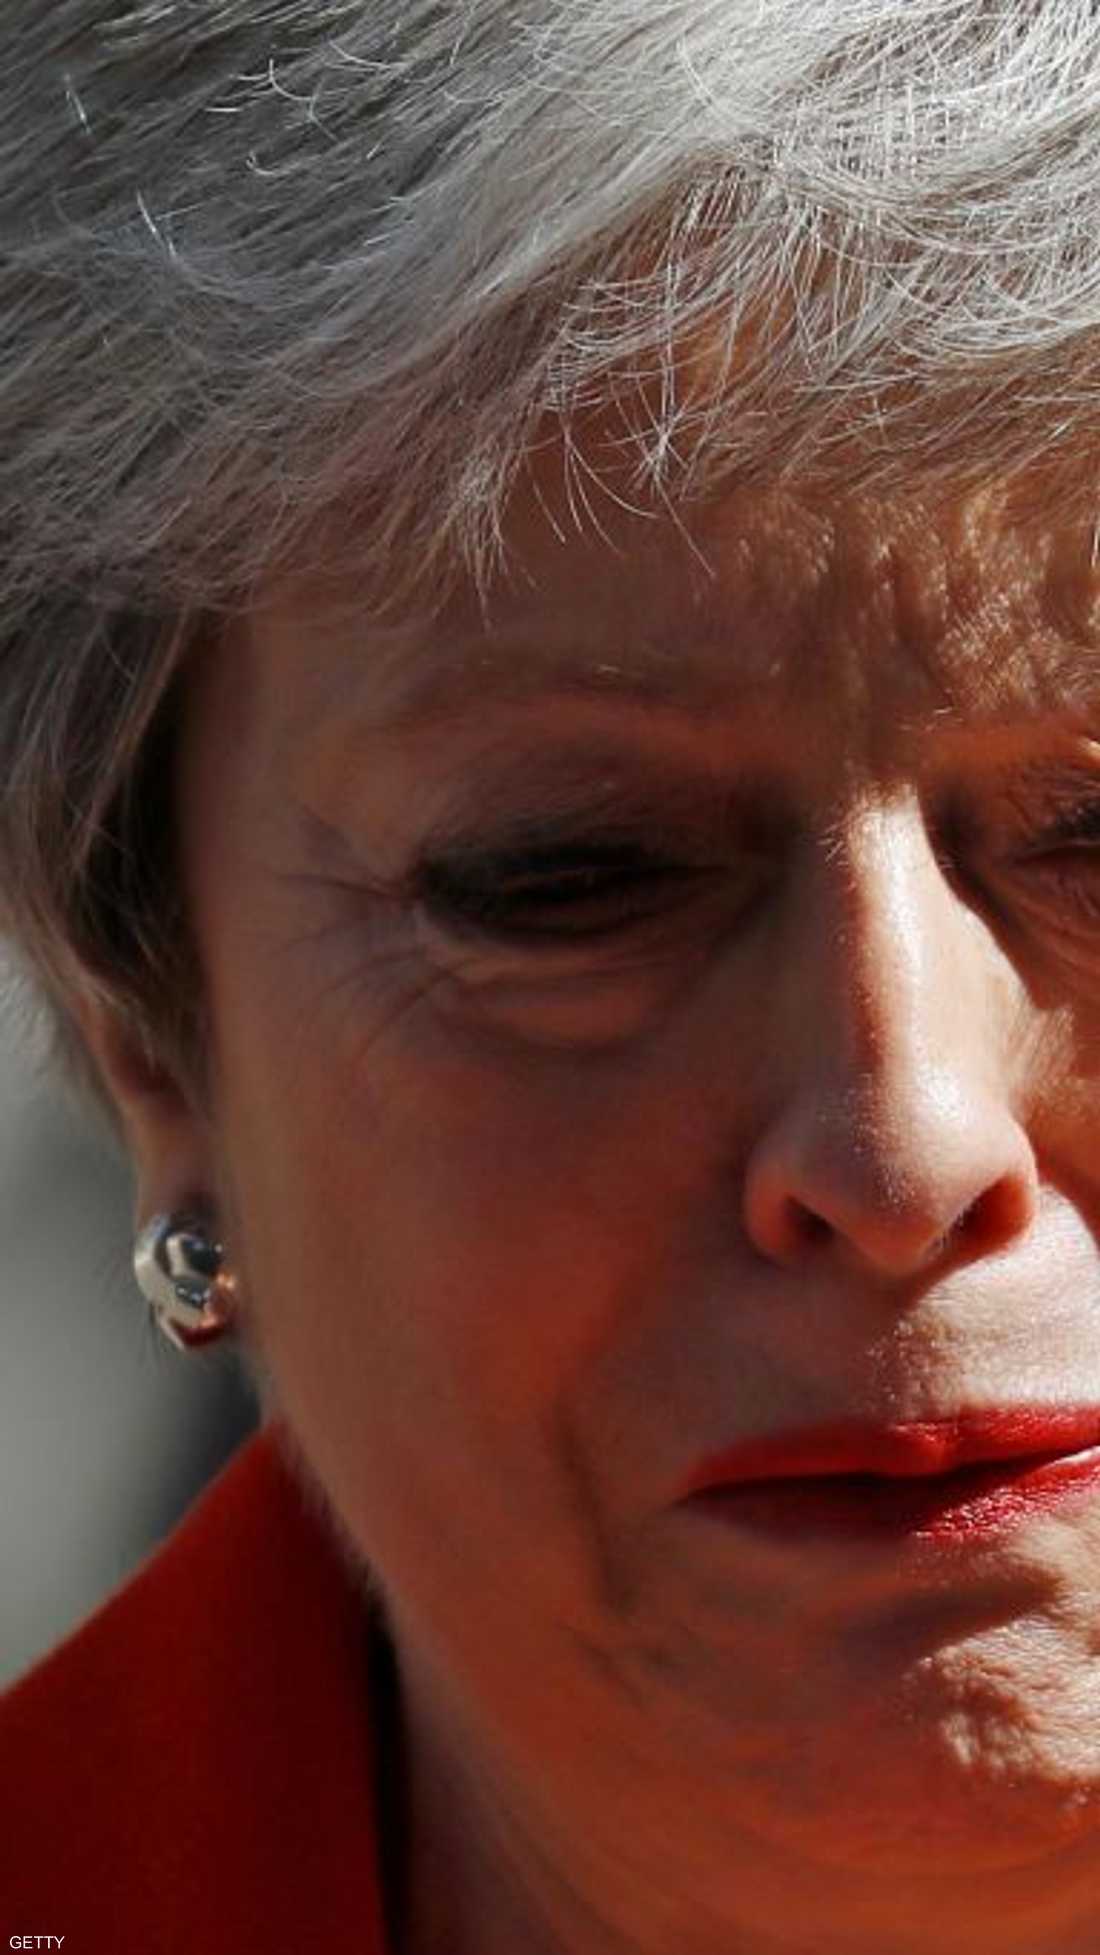 أعلنت رئيسة الوزراء البريطانية تيريزا ماي، الجمعة، استقالتها من منصبها، لتمهد الطريق أمام اختيار زعيم جديد من المرجح أن يسعى لإبرام اتفاق أكثر حسما لخروج بريطانيا من الاتحاد الأوروبي.